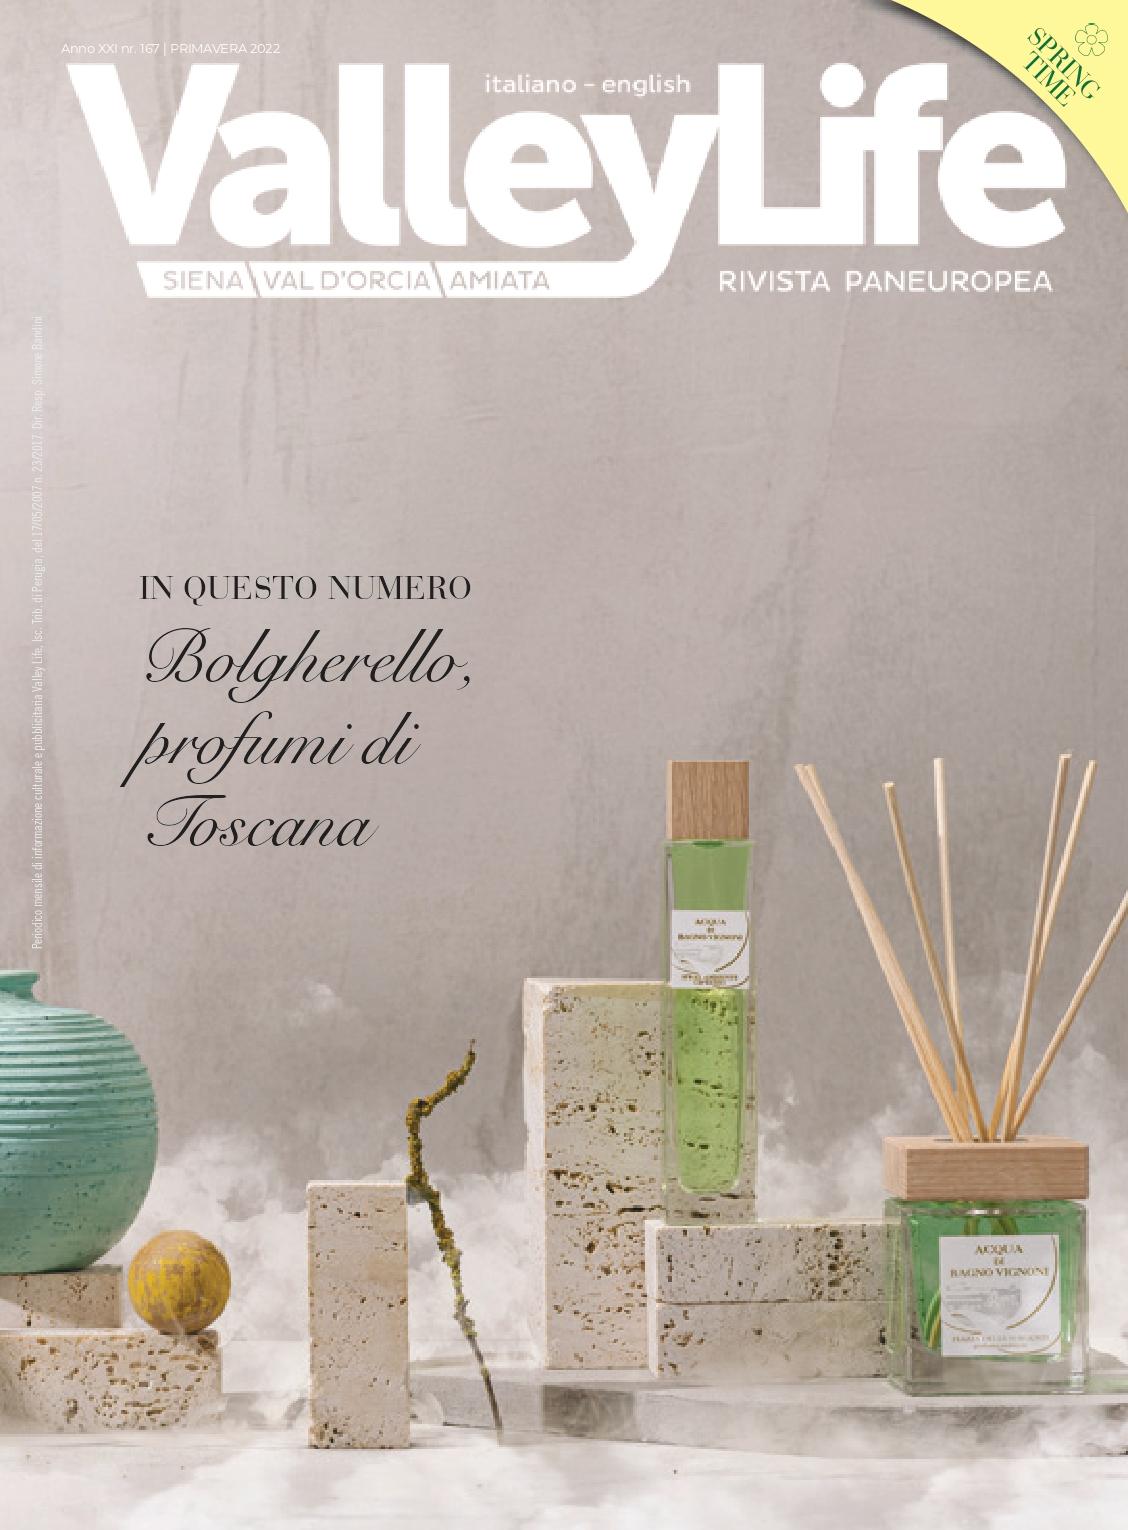 Valley Life Siena Valdorcia Amiata Spring 2022